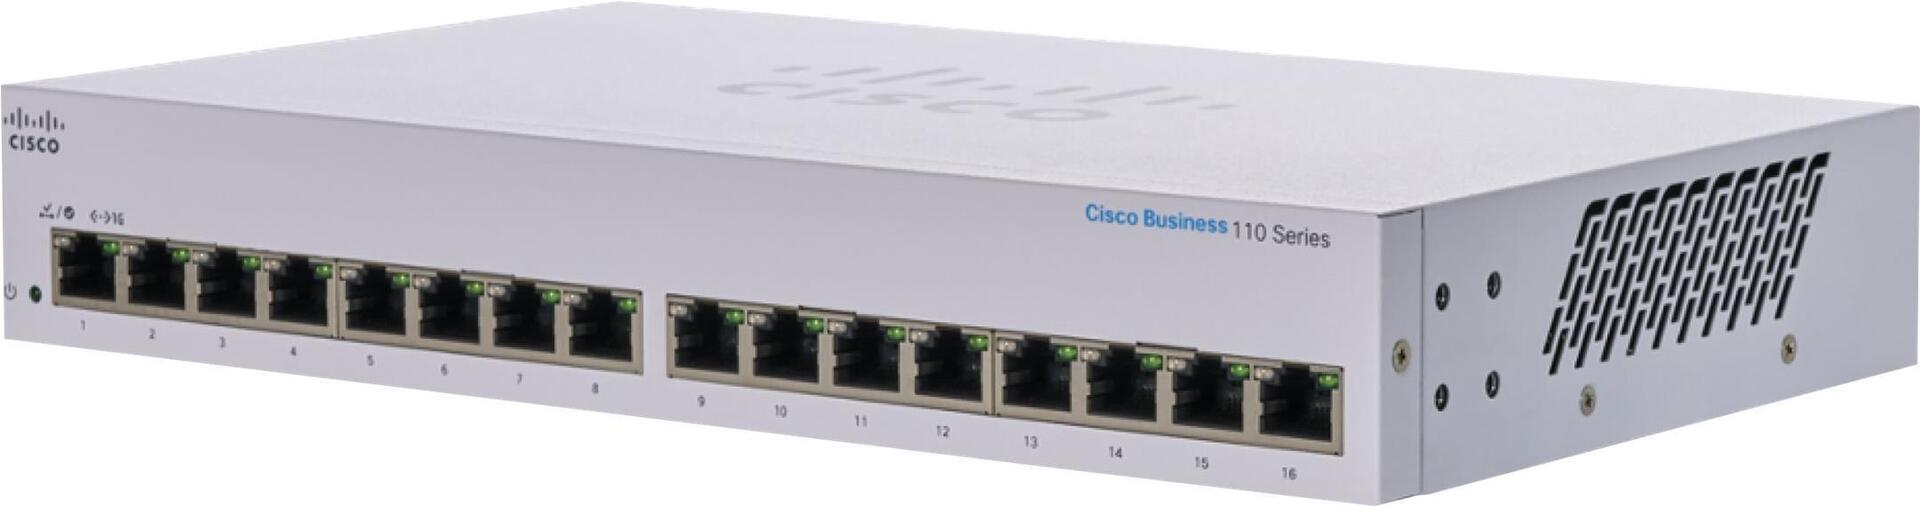 Cisco Business 110 Series 110-16T (CBS110-16T-EU)